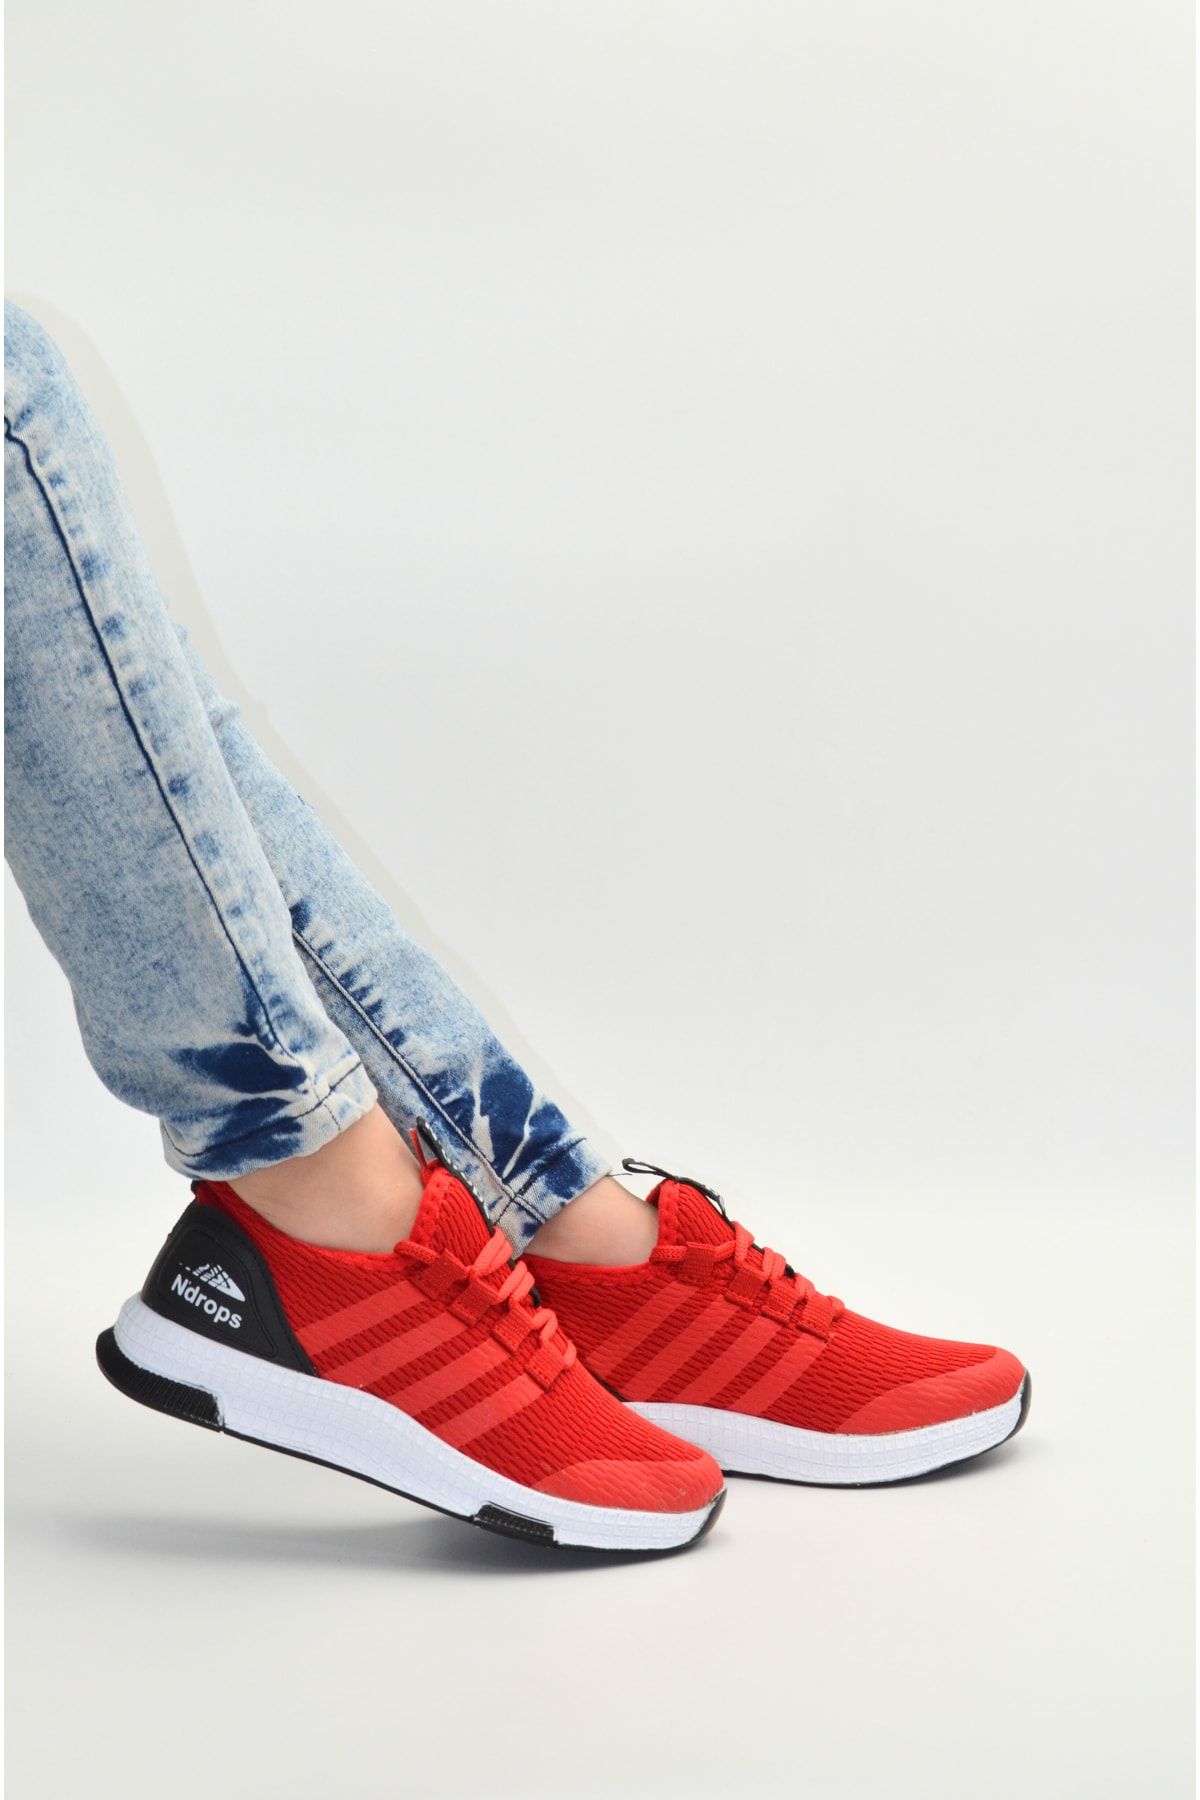 KunduraHane Kırmızı Beyaz Siyah Renk Ultra Hafif Esnek Rahat Çocuk Yürüyüş Ve Spor Ayakkabı, Günlük Ayakkabı